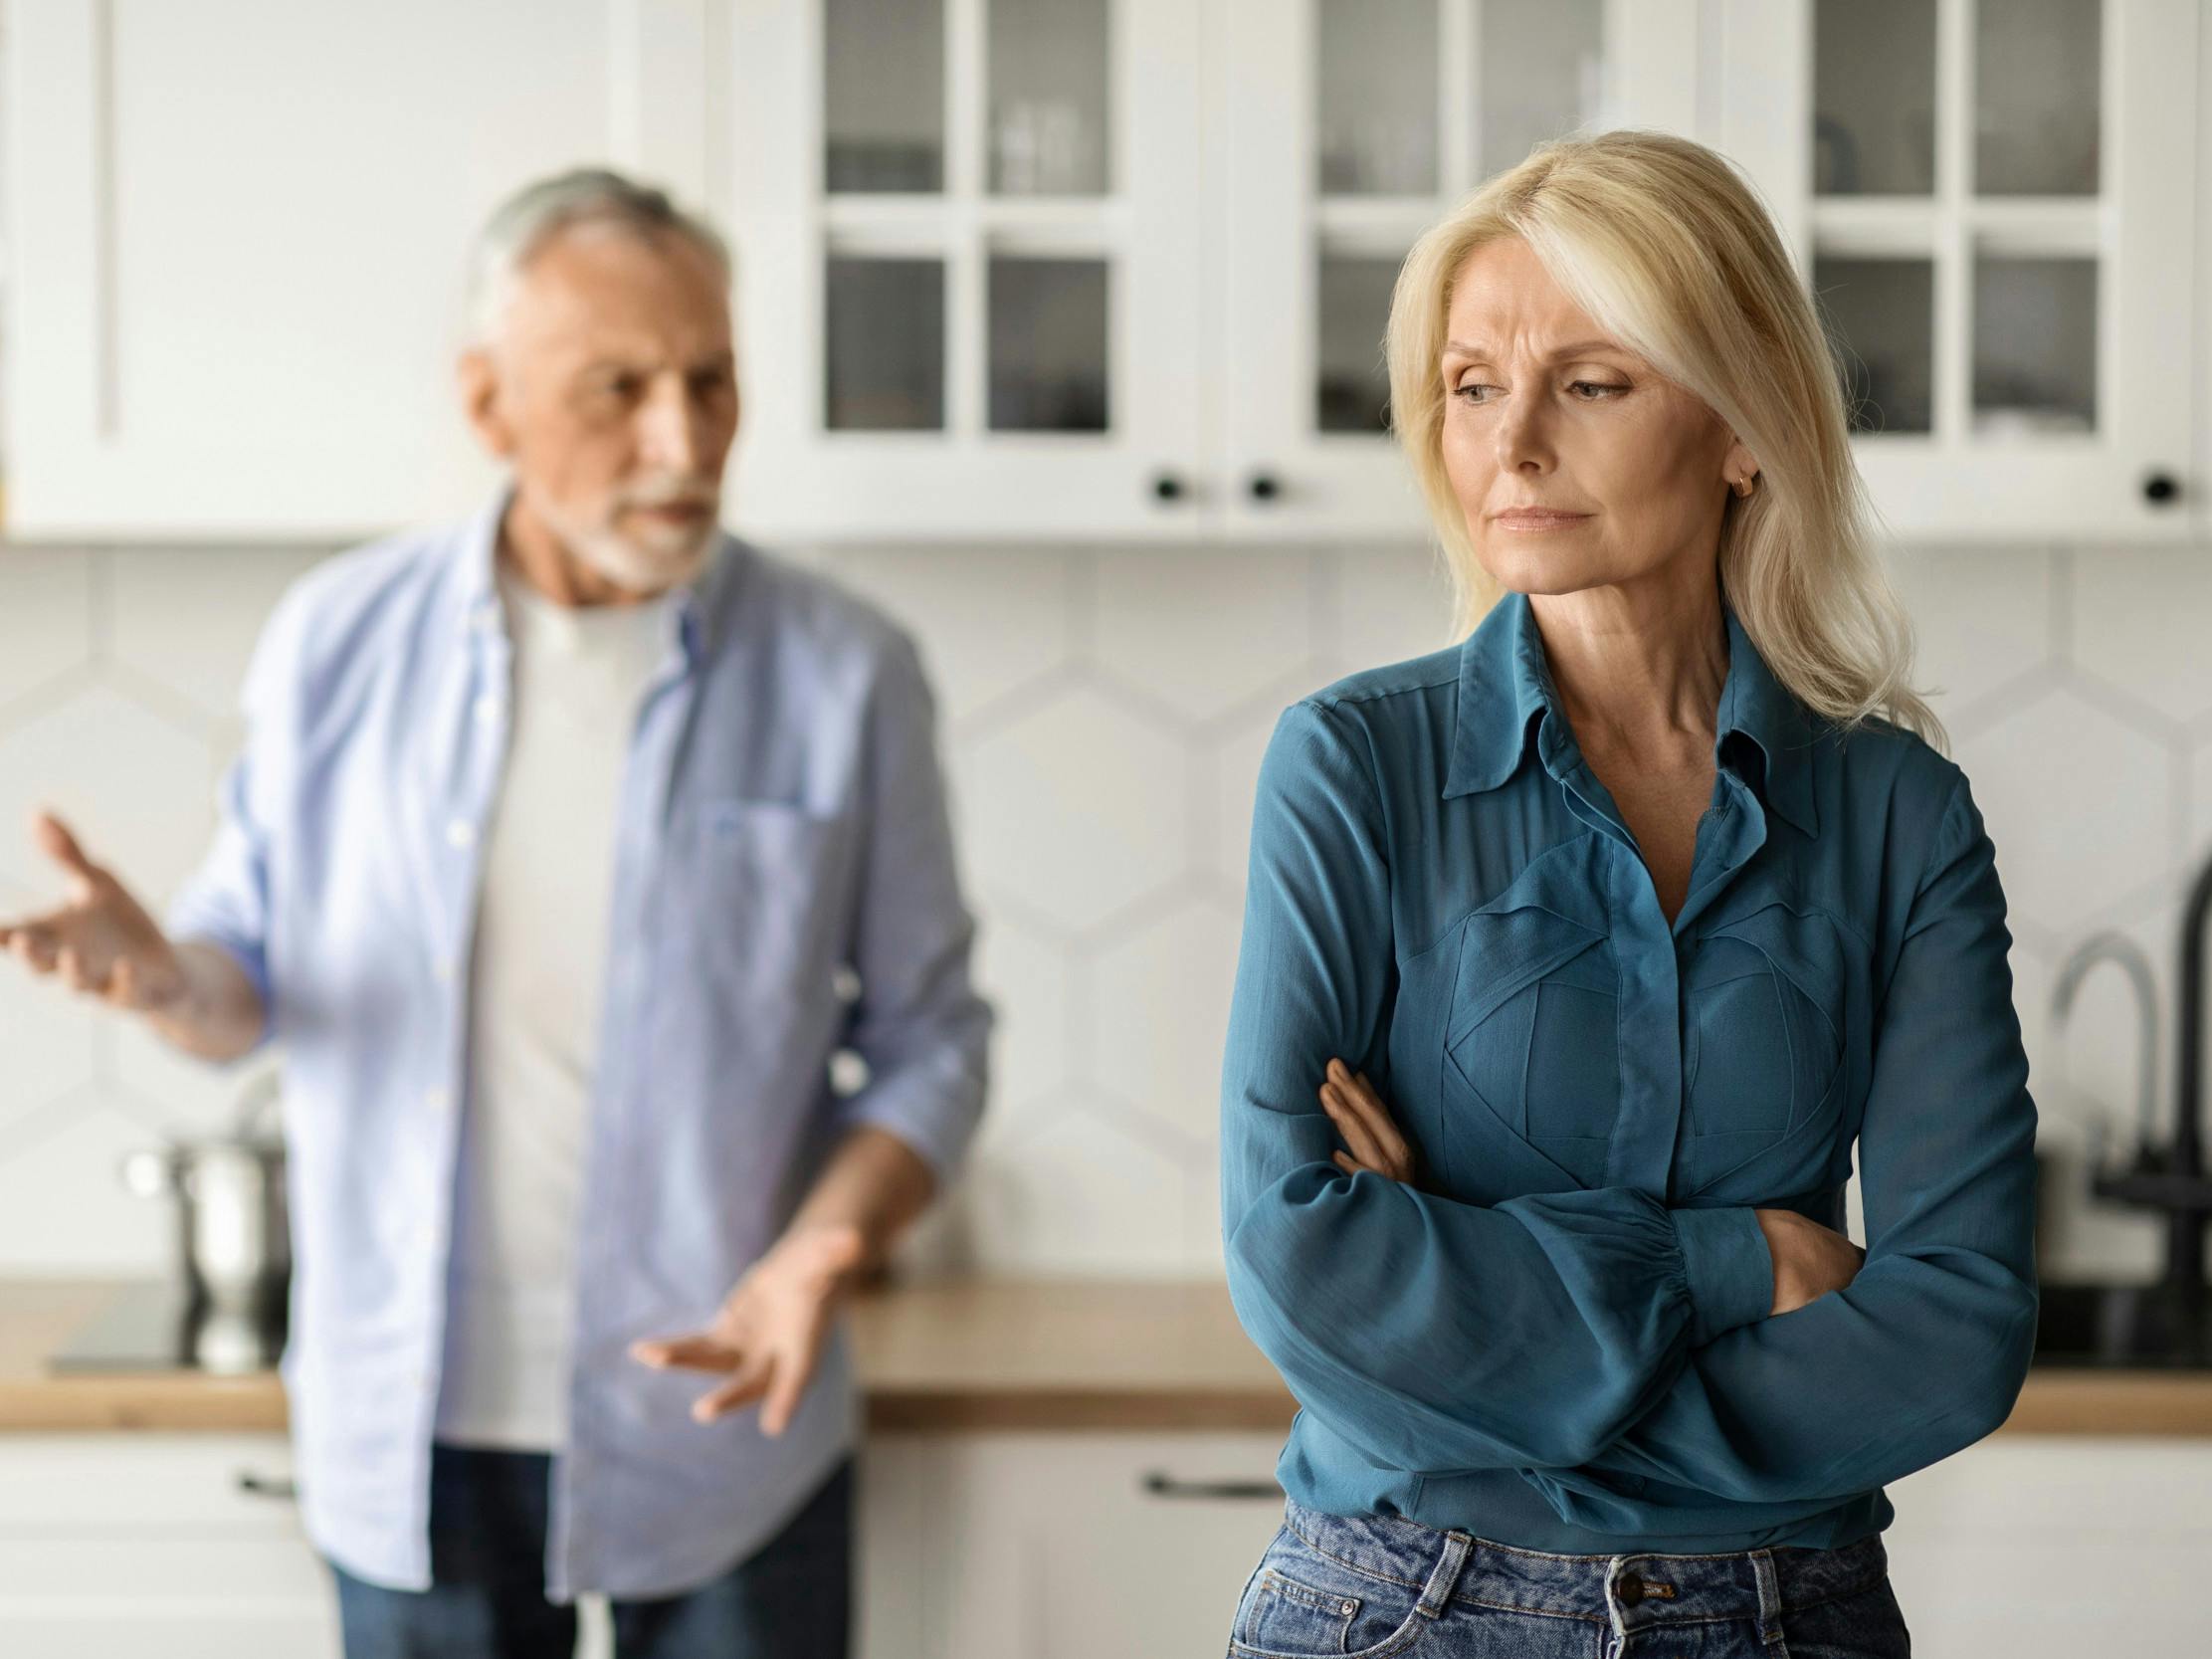 En midaldrende mand prøver at forklare sig over for sin kone, der ser vred ud.